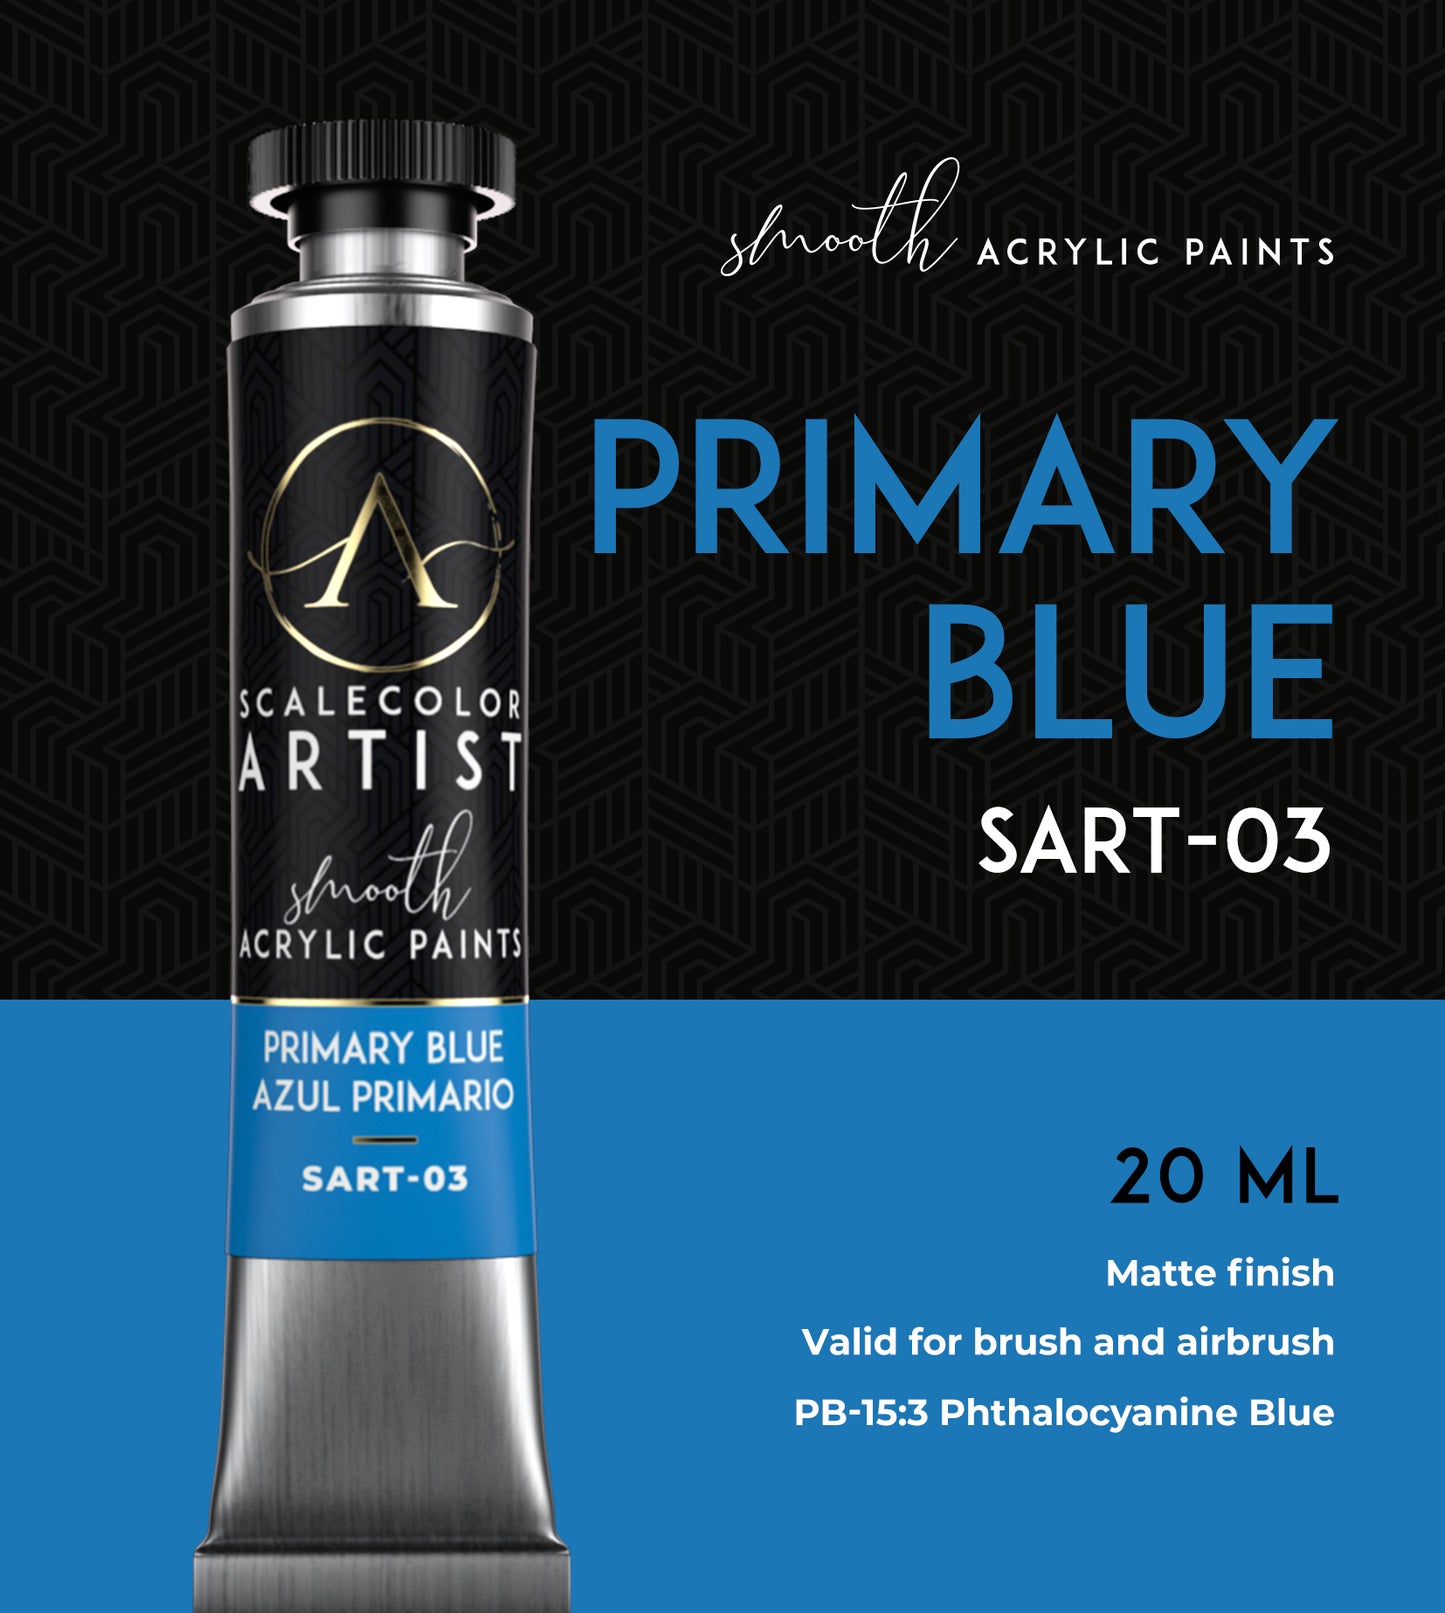 PRIMARY BLUE